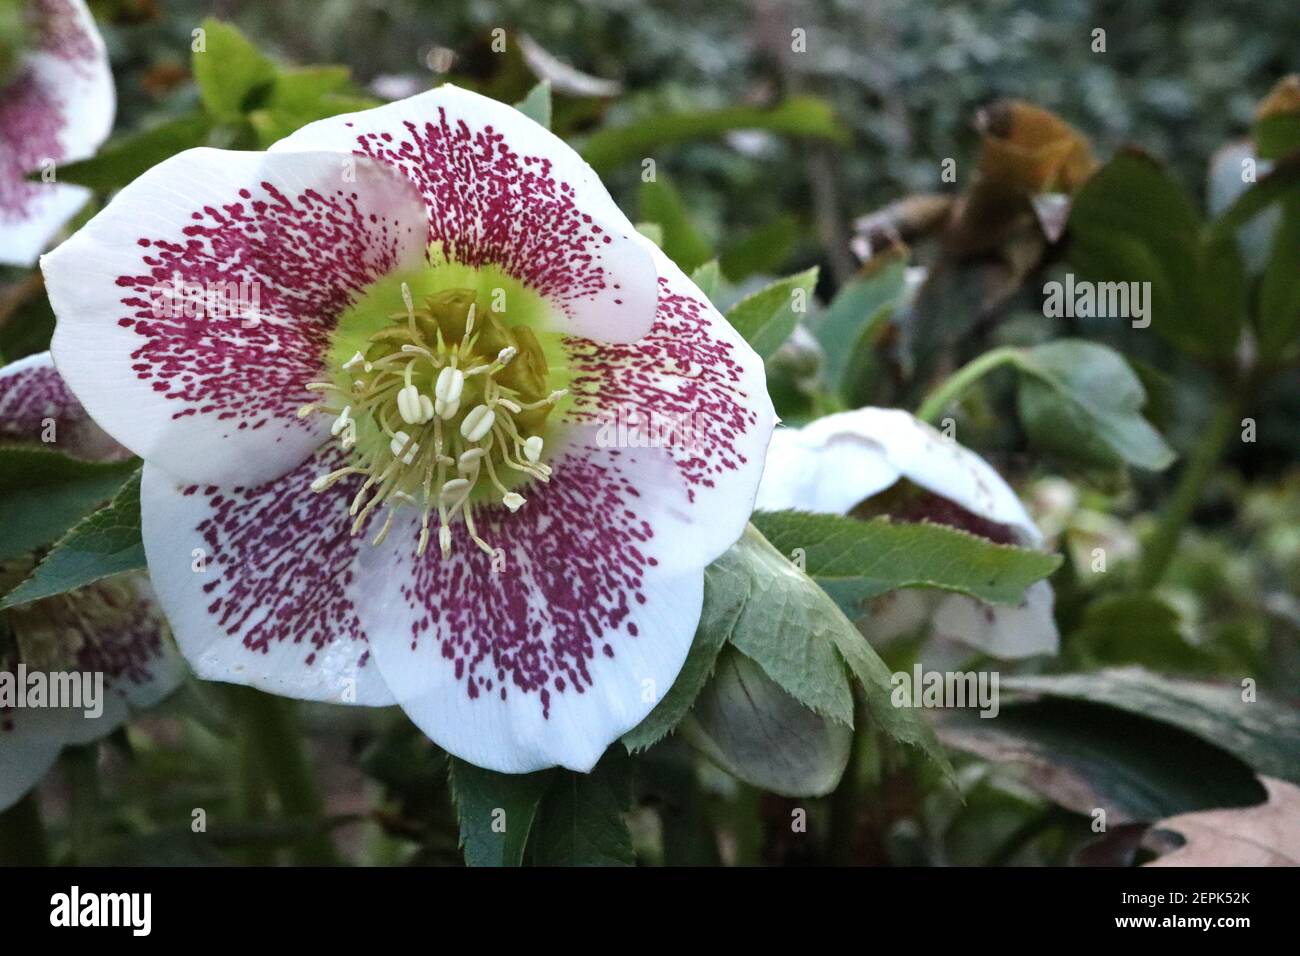 Helleborus x hybridus ‘Single White Spotted’ Hellebore blanc unique à pois – fleurs blanches avec freckles pourpres, février, Angleterre, Royaume-Uni Banque D'Images